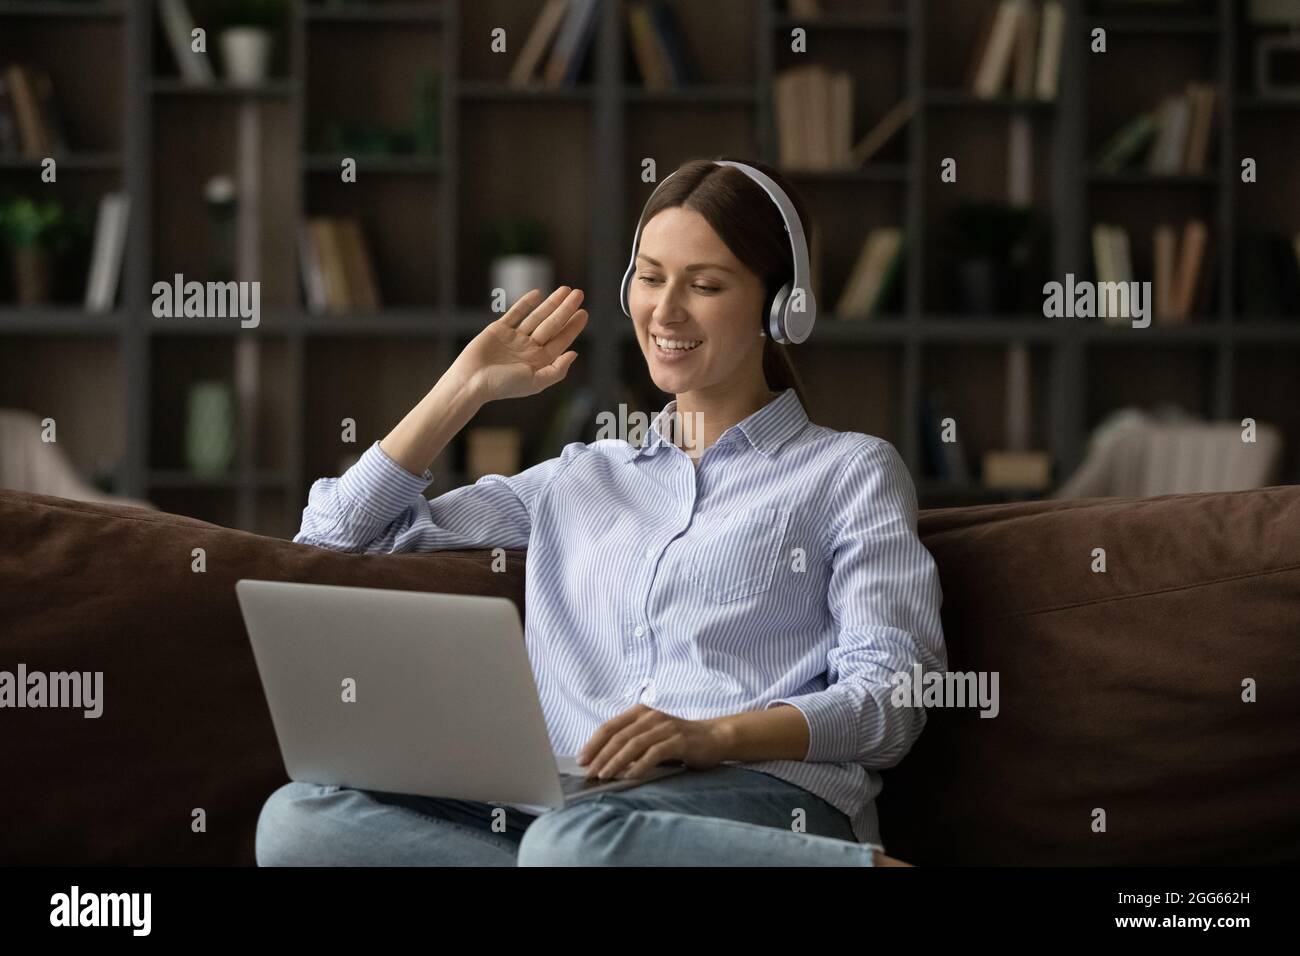 Lächelnde Frau mit Kopfhörern, die mit der Hand die Webcam anwinkt und einen Laptop benutzt Stockfoto